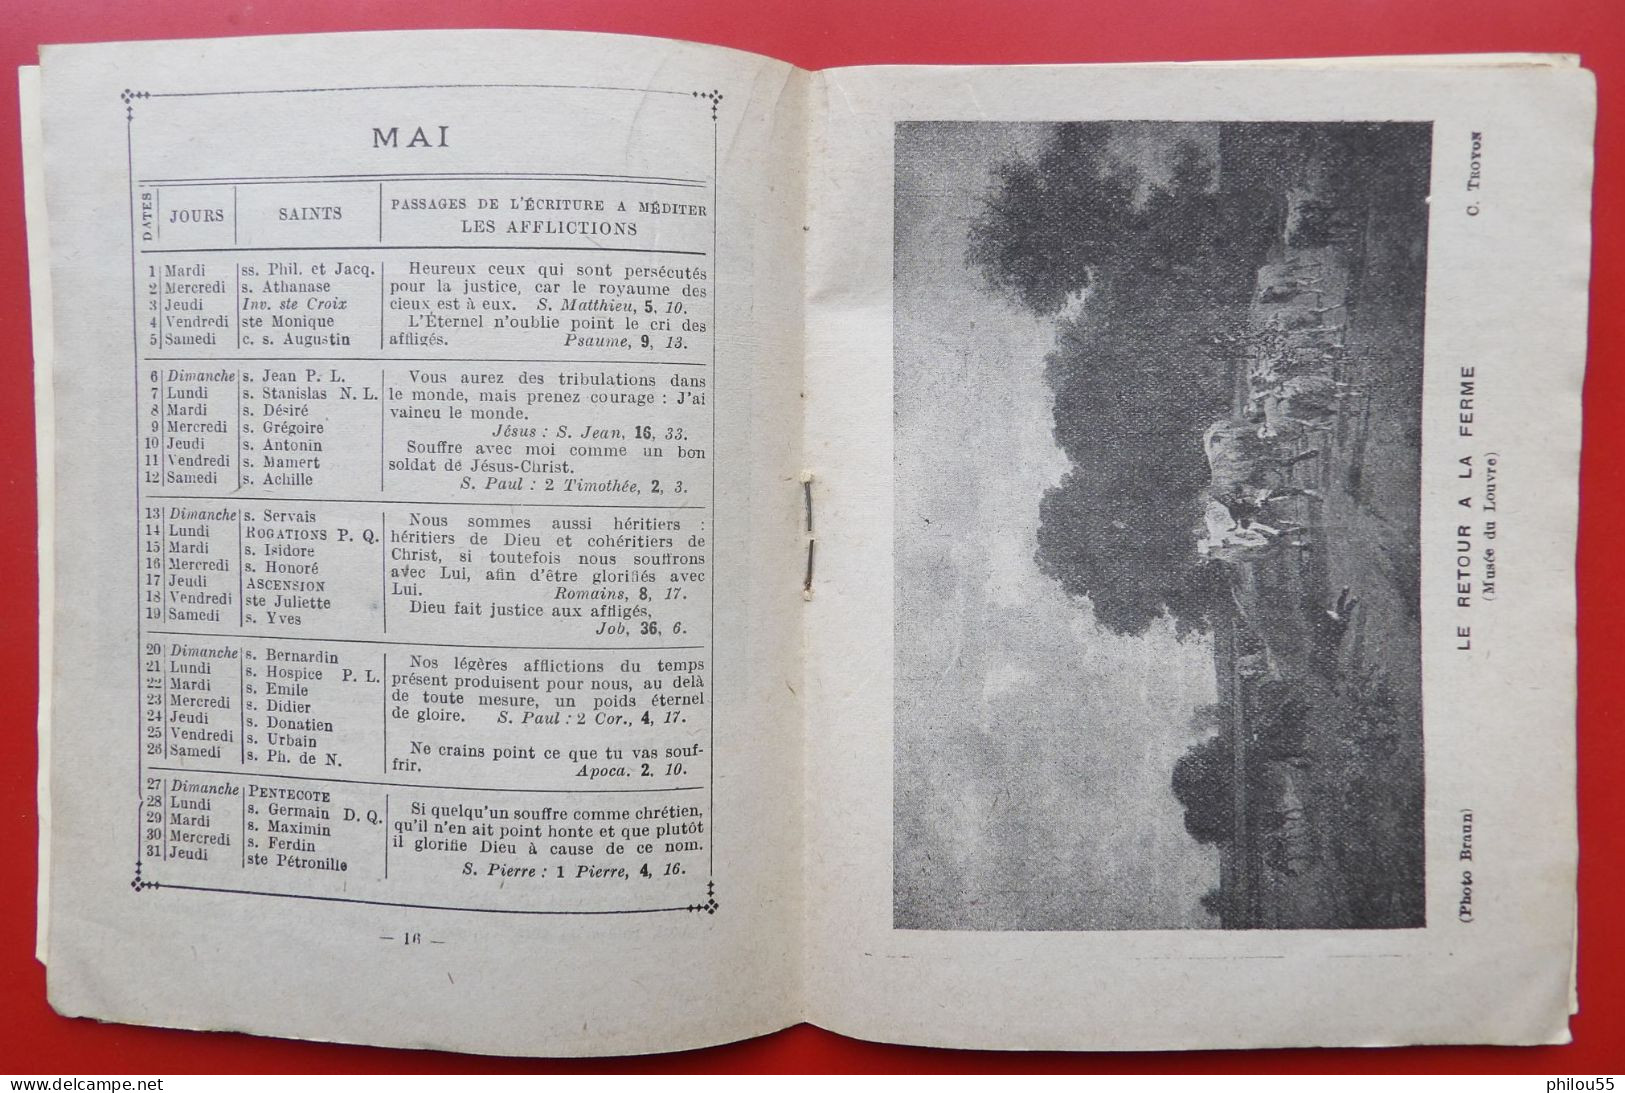 Almanach des Prisonniers de Guerre Francais 1917